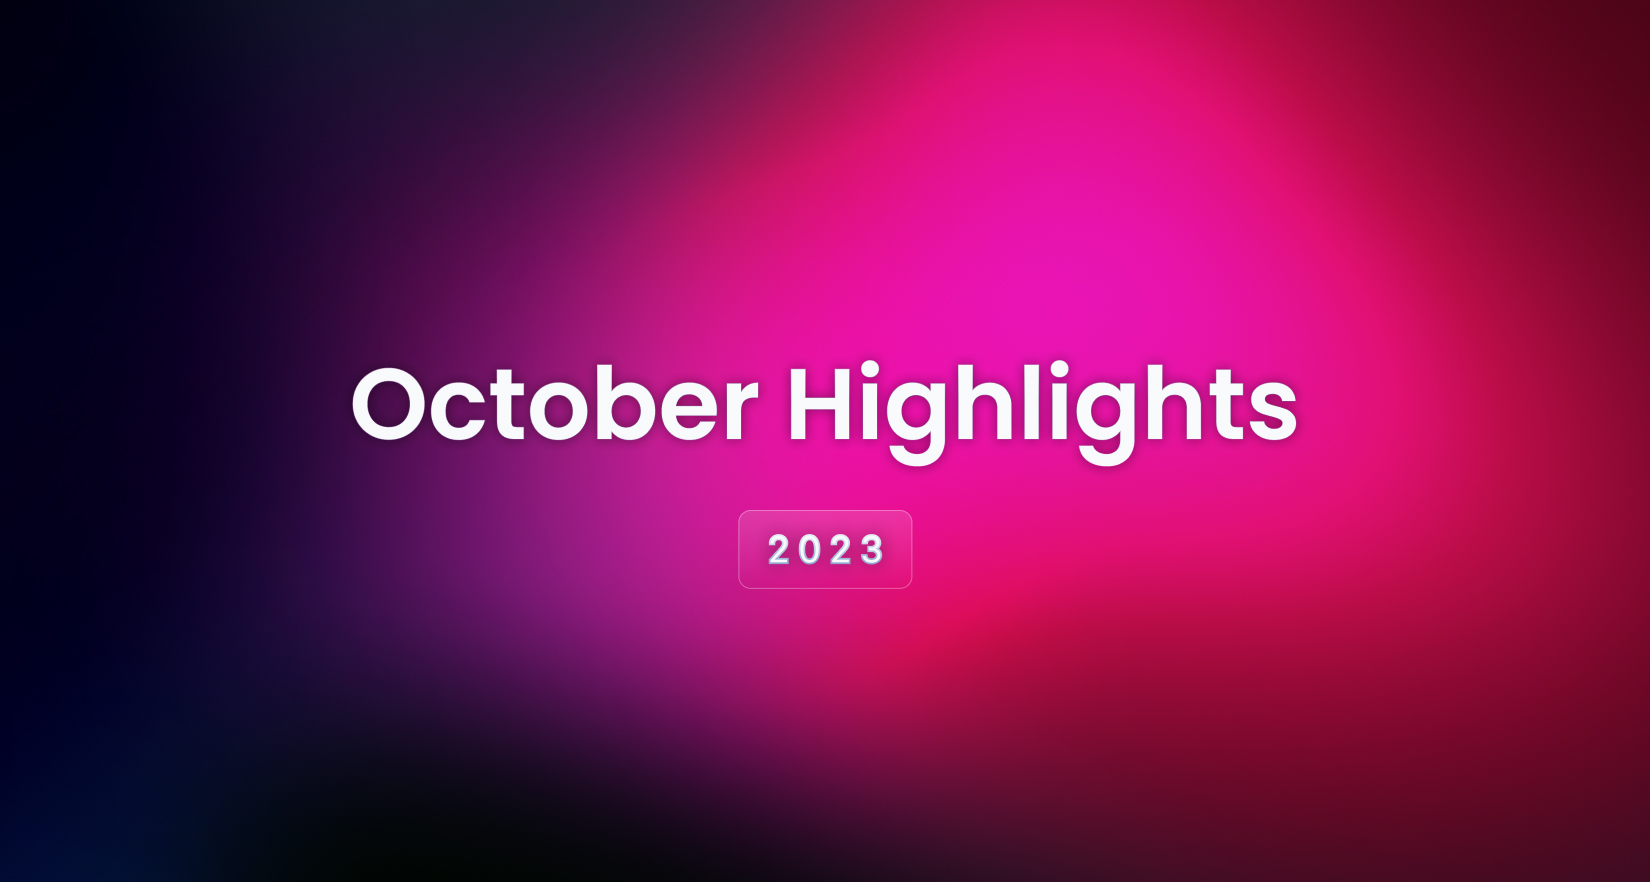 October 2023 Highlights